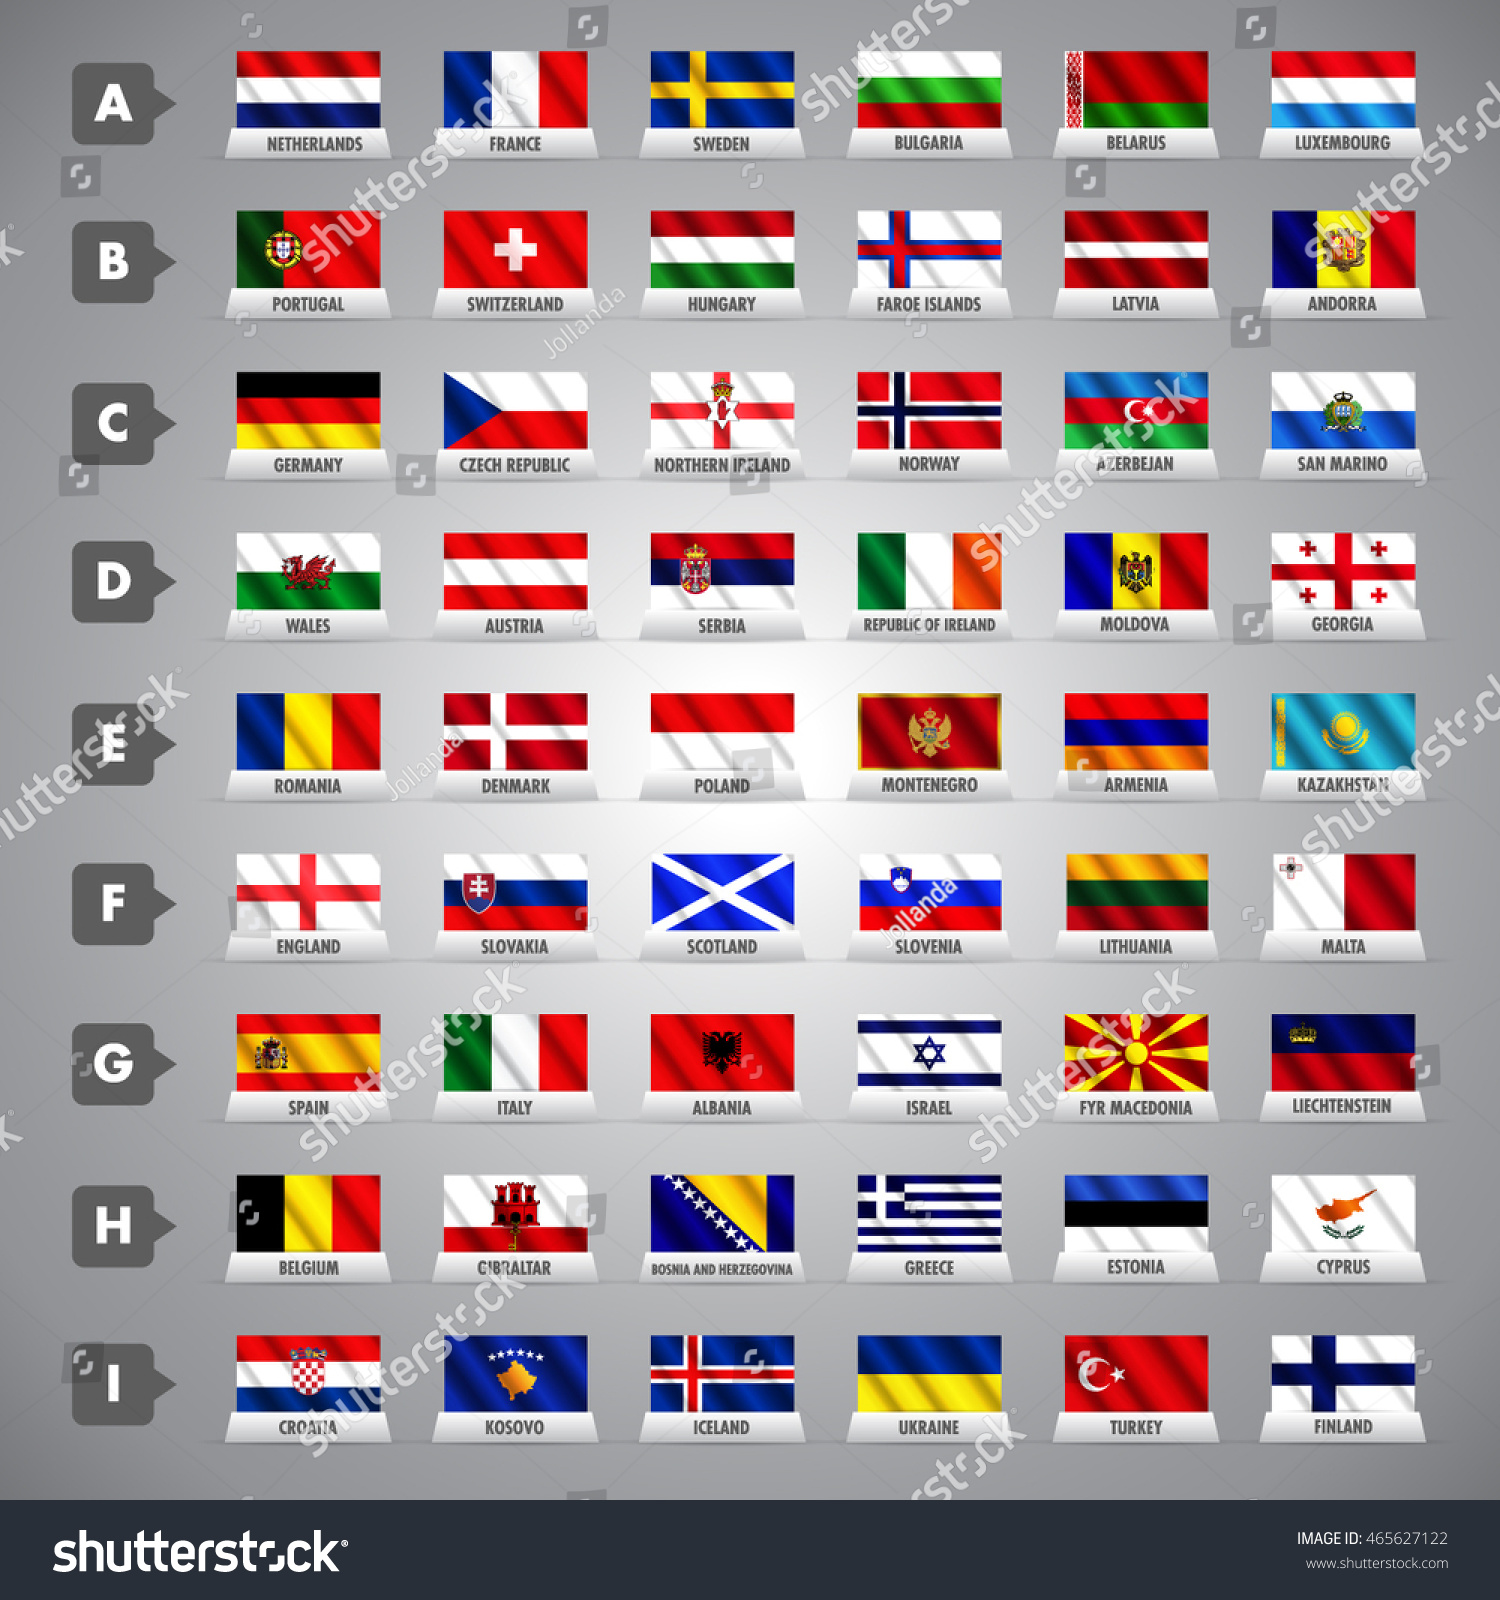 Флаги европы фото. Флаги стран Европы с названиями на русском. Флаги стран Европы на русском. Флаги европейских государств.